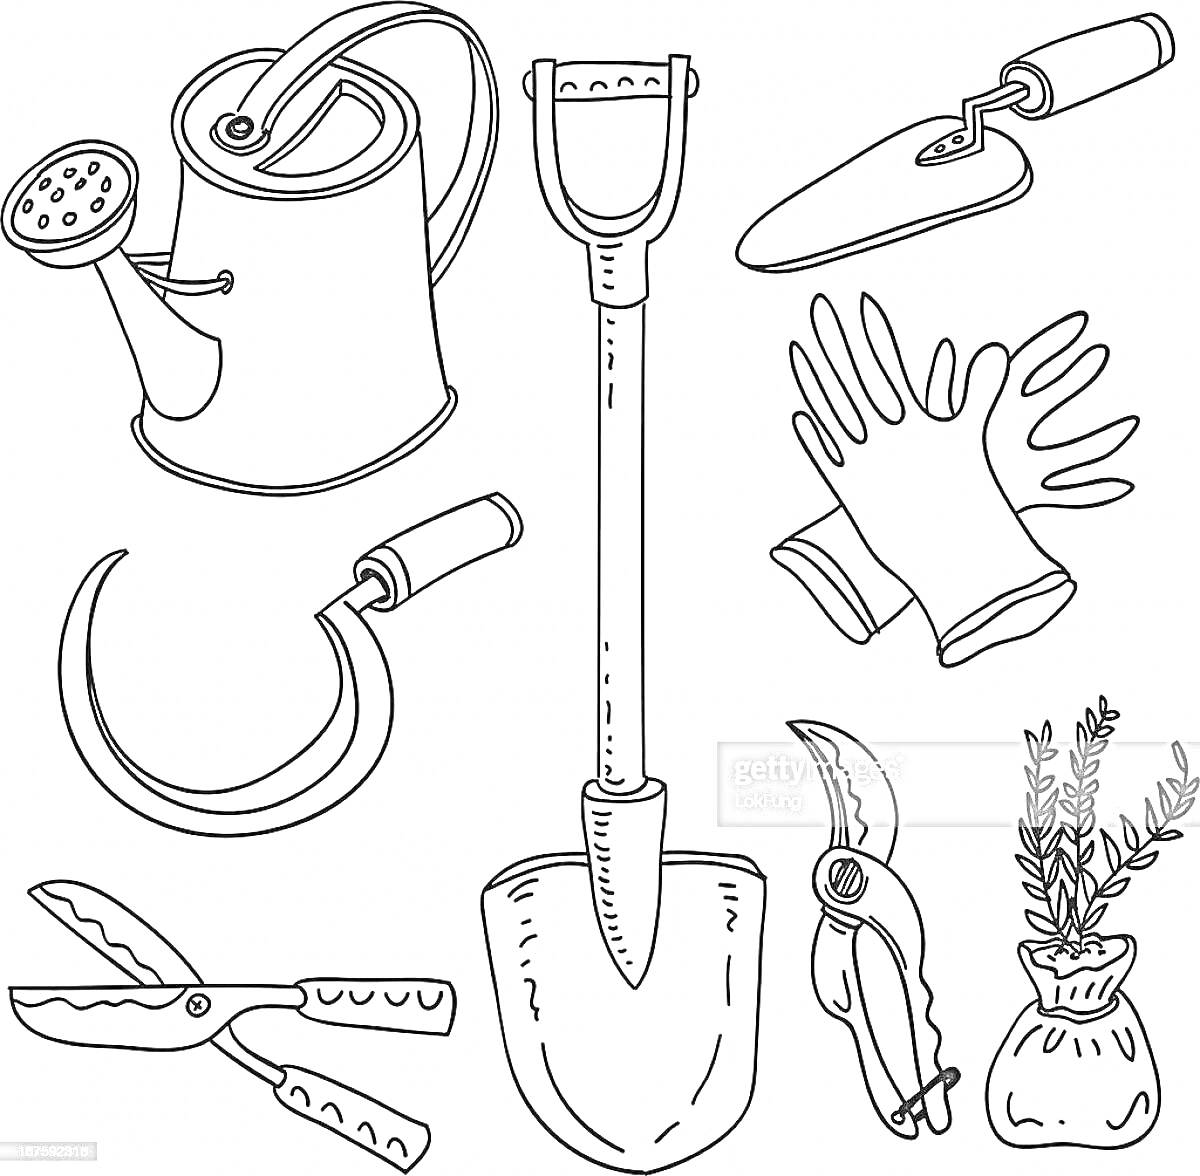 Лейка, лопата, грабли, перчатки, серп, ножницы, секатор и мешочек с травами